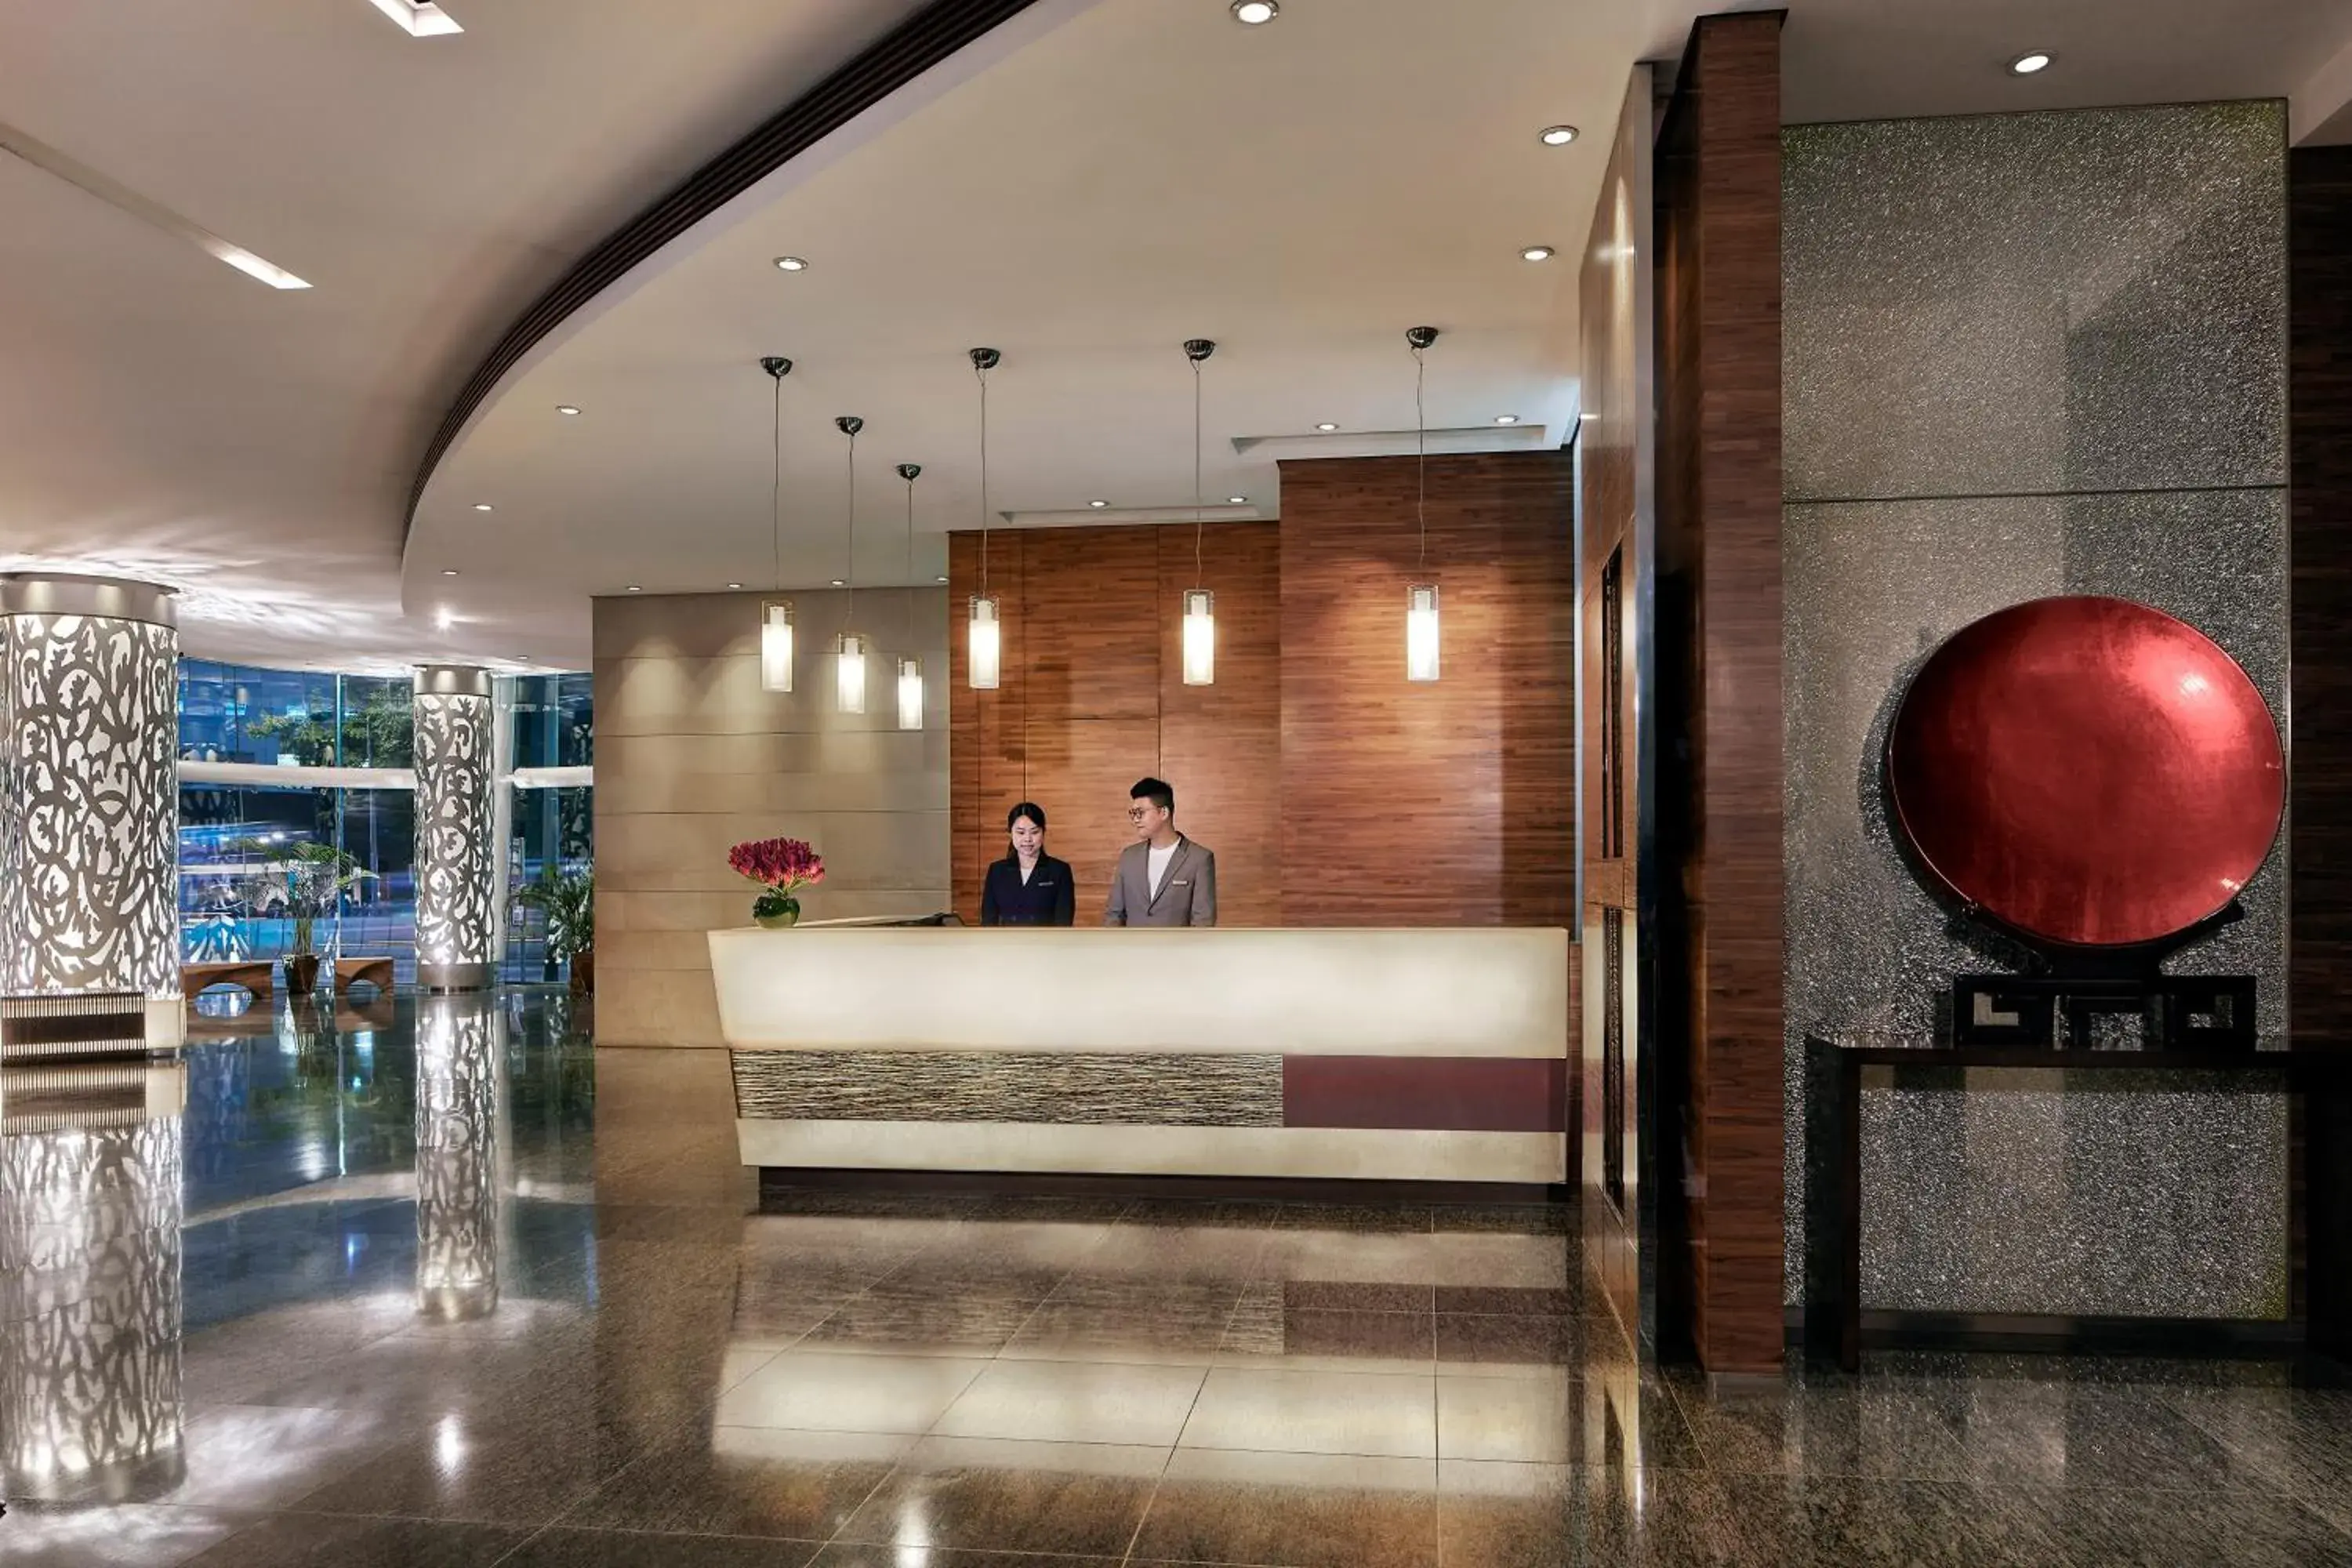 Lobby or reception, Lobby/Reception in Nina Hotel Causeway Bay